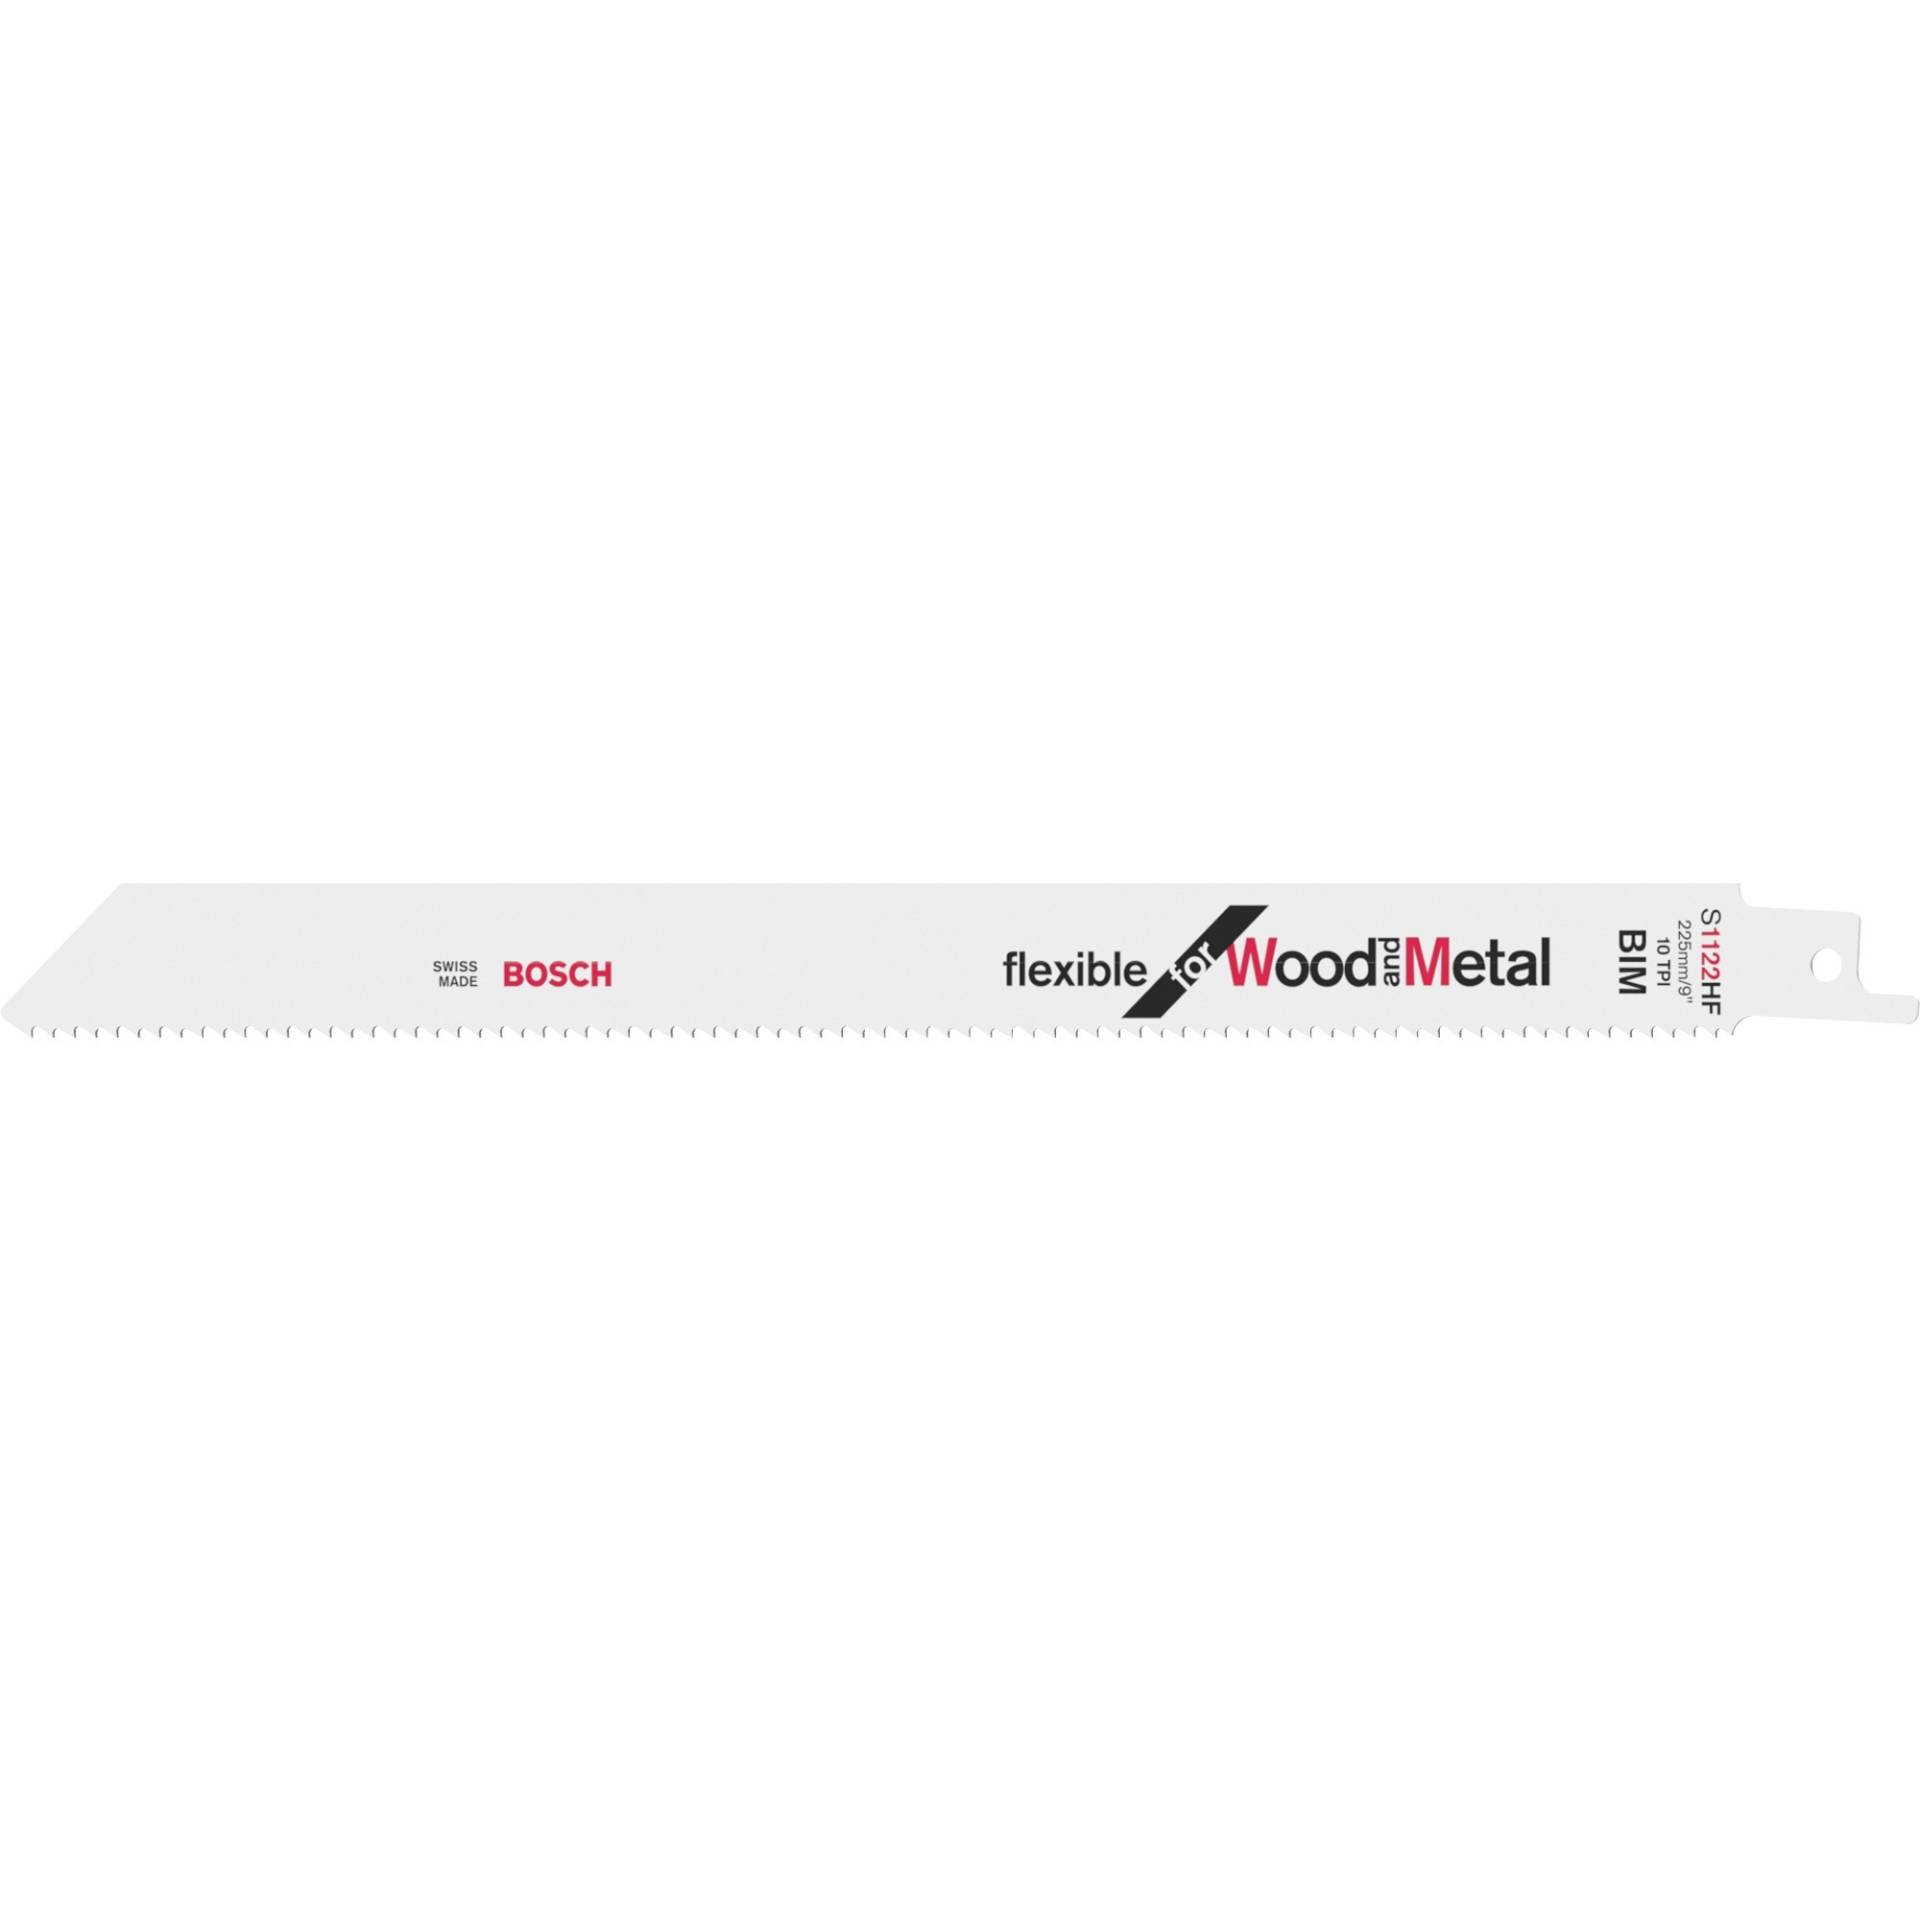 Säbelsägeblatt S 1122 HF Flexible for Wood and Metal, 5 Stück von Bosch